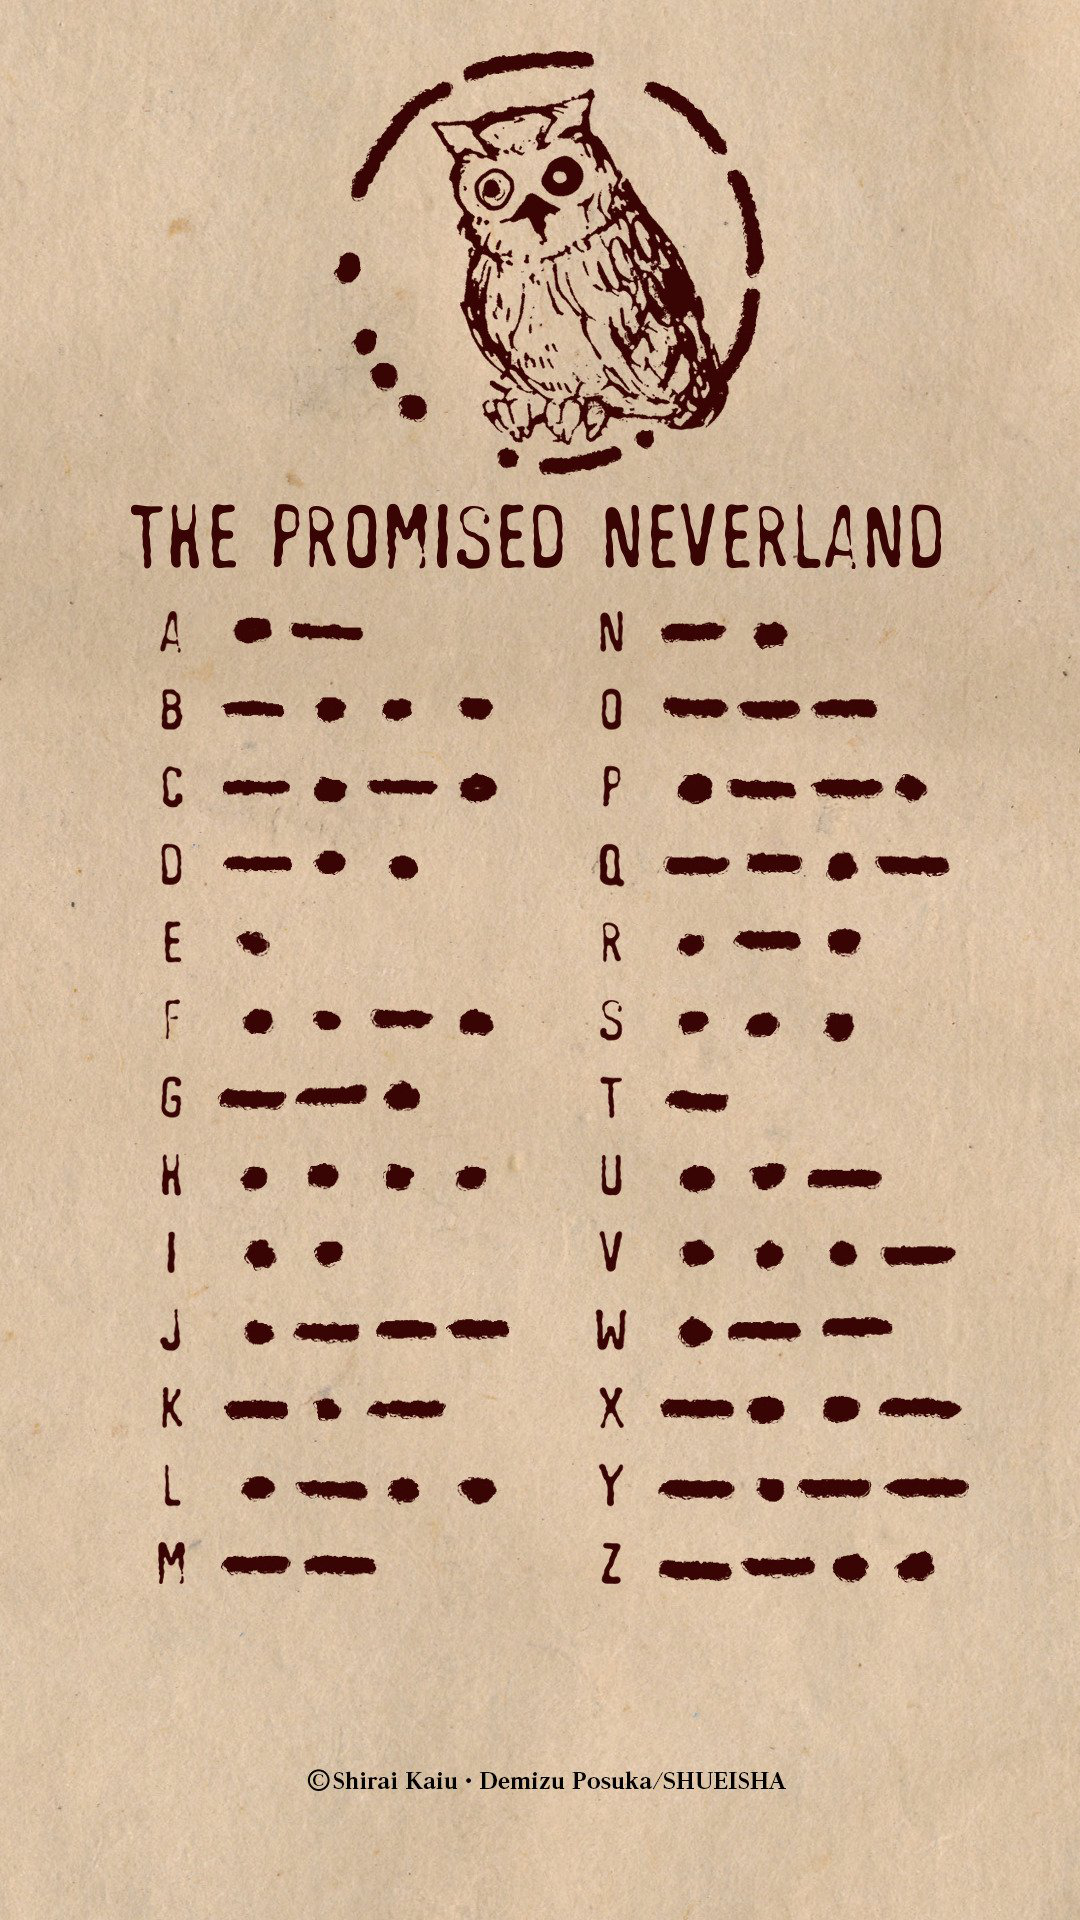 The Promised Neverland (season 1) - Wikipedia